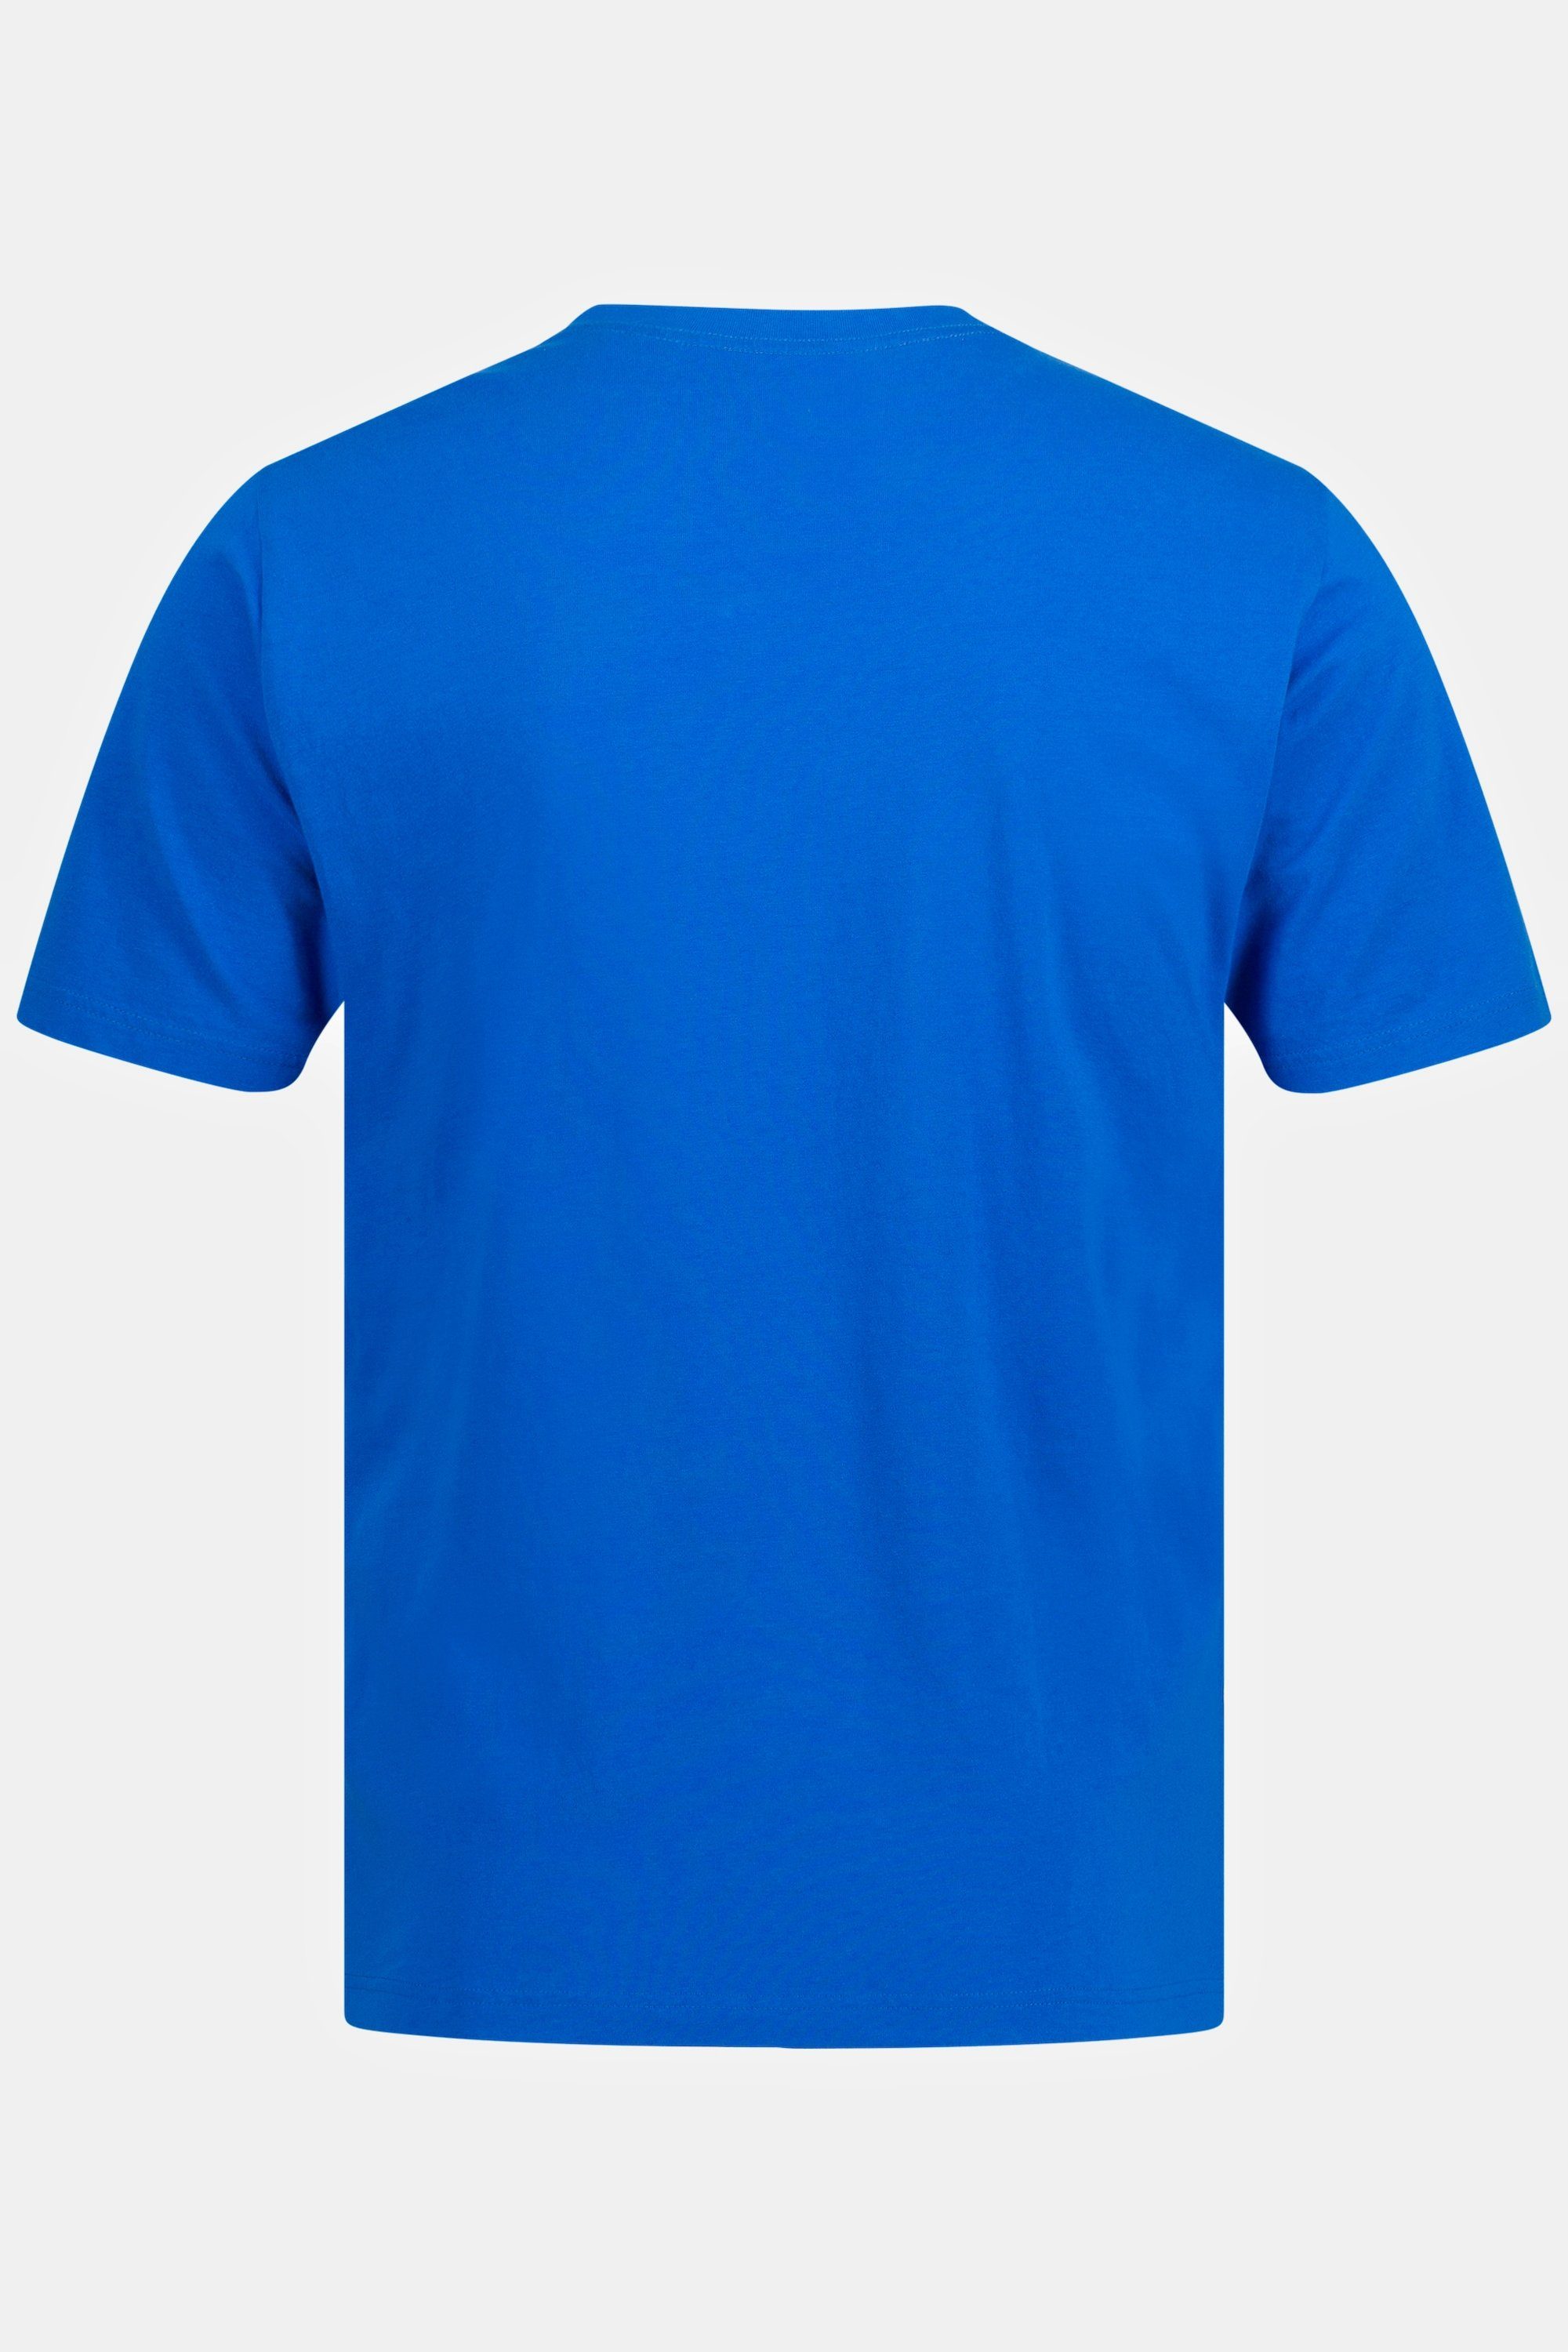 blau T-Shirt 8XL bis Basic T-Shirt V-Ausschnitt JP1880